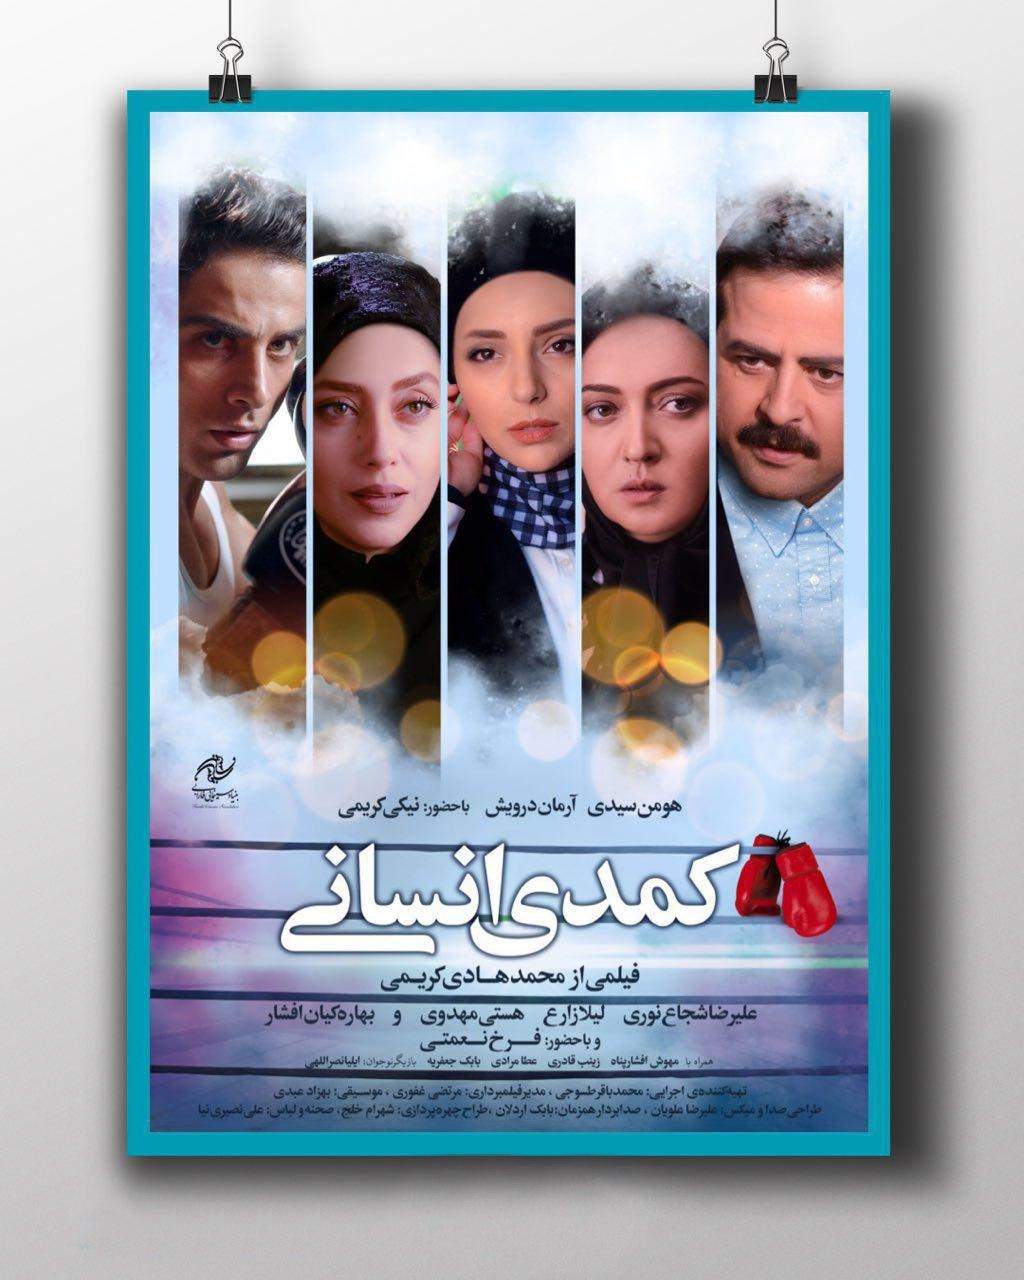 فیلم کمدی انسانی,اخبار فیلم و سینما,خبرهای فیلم و سینما,سینمای ایران